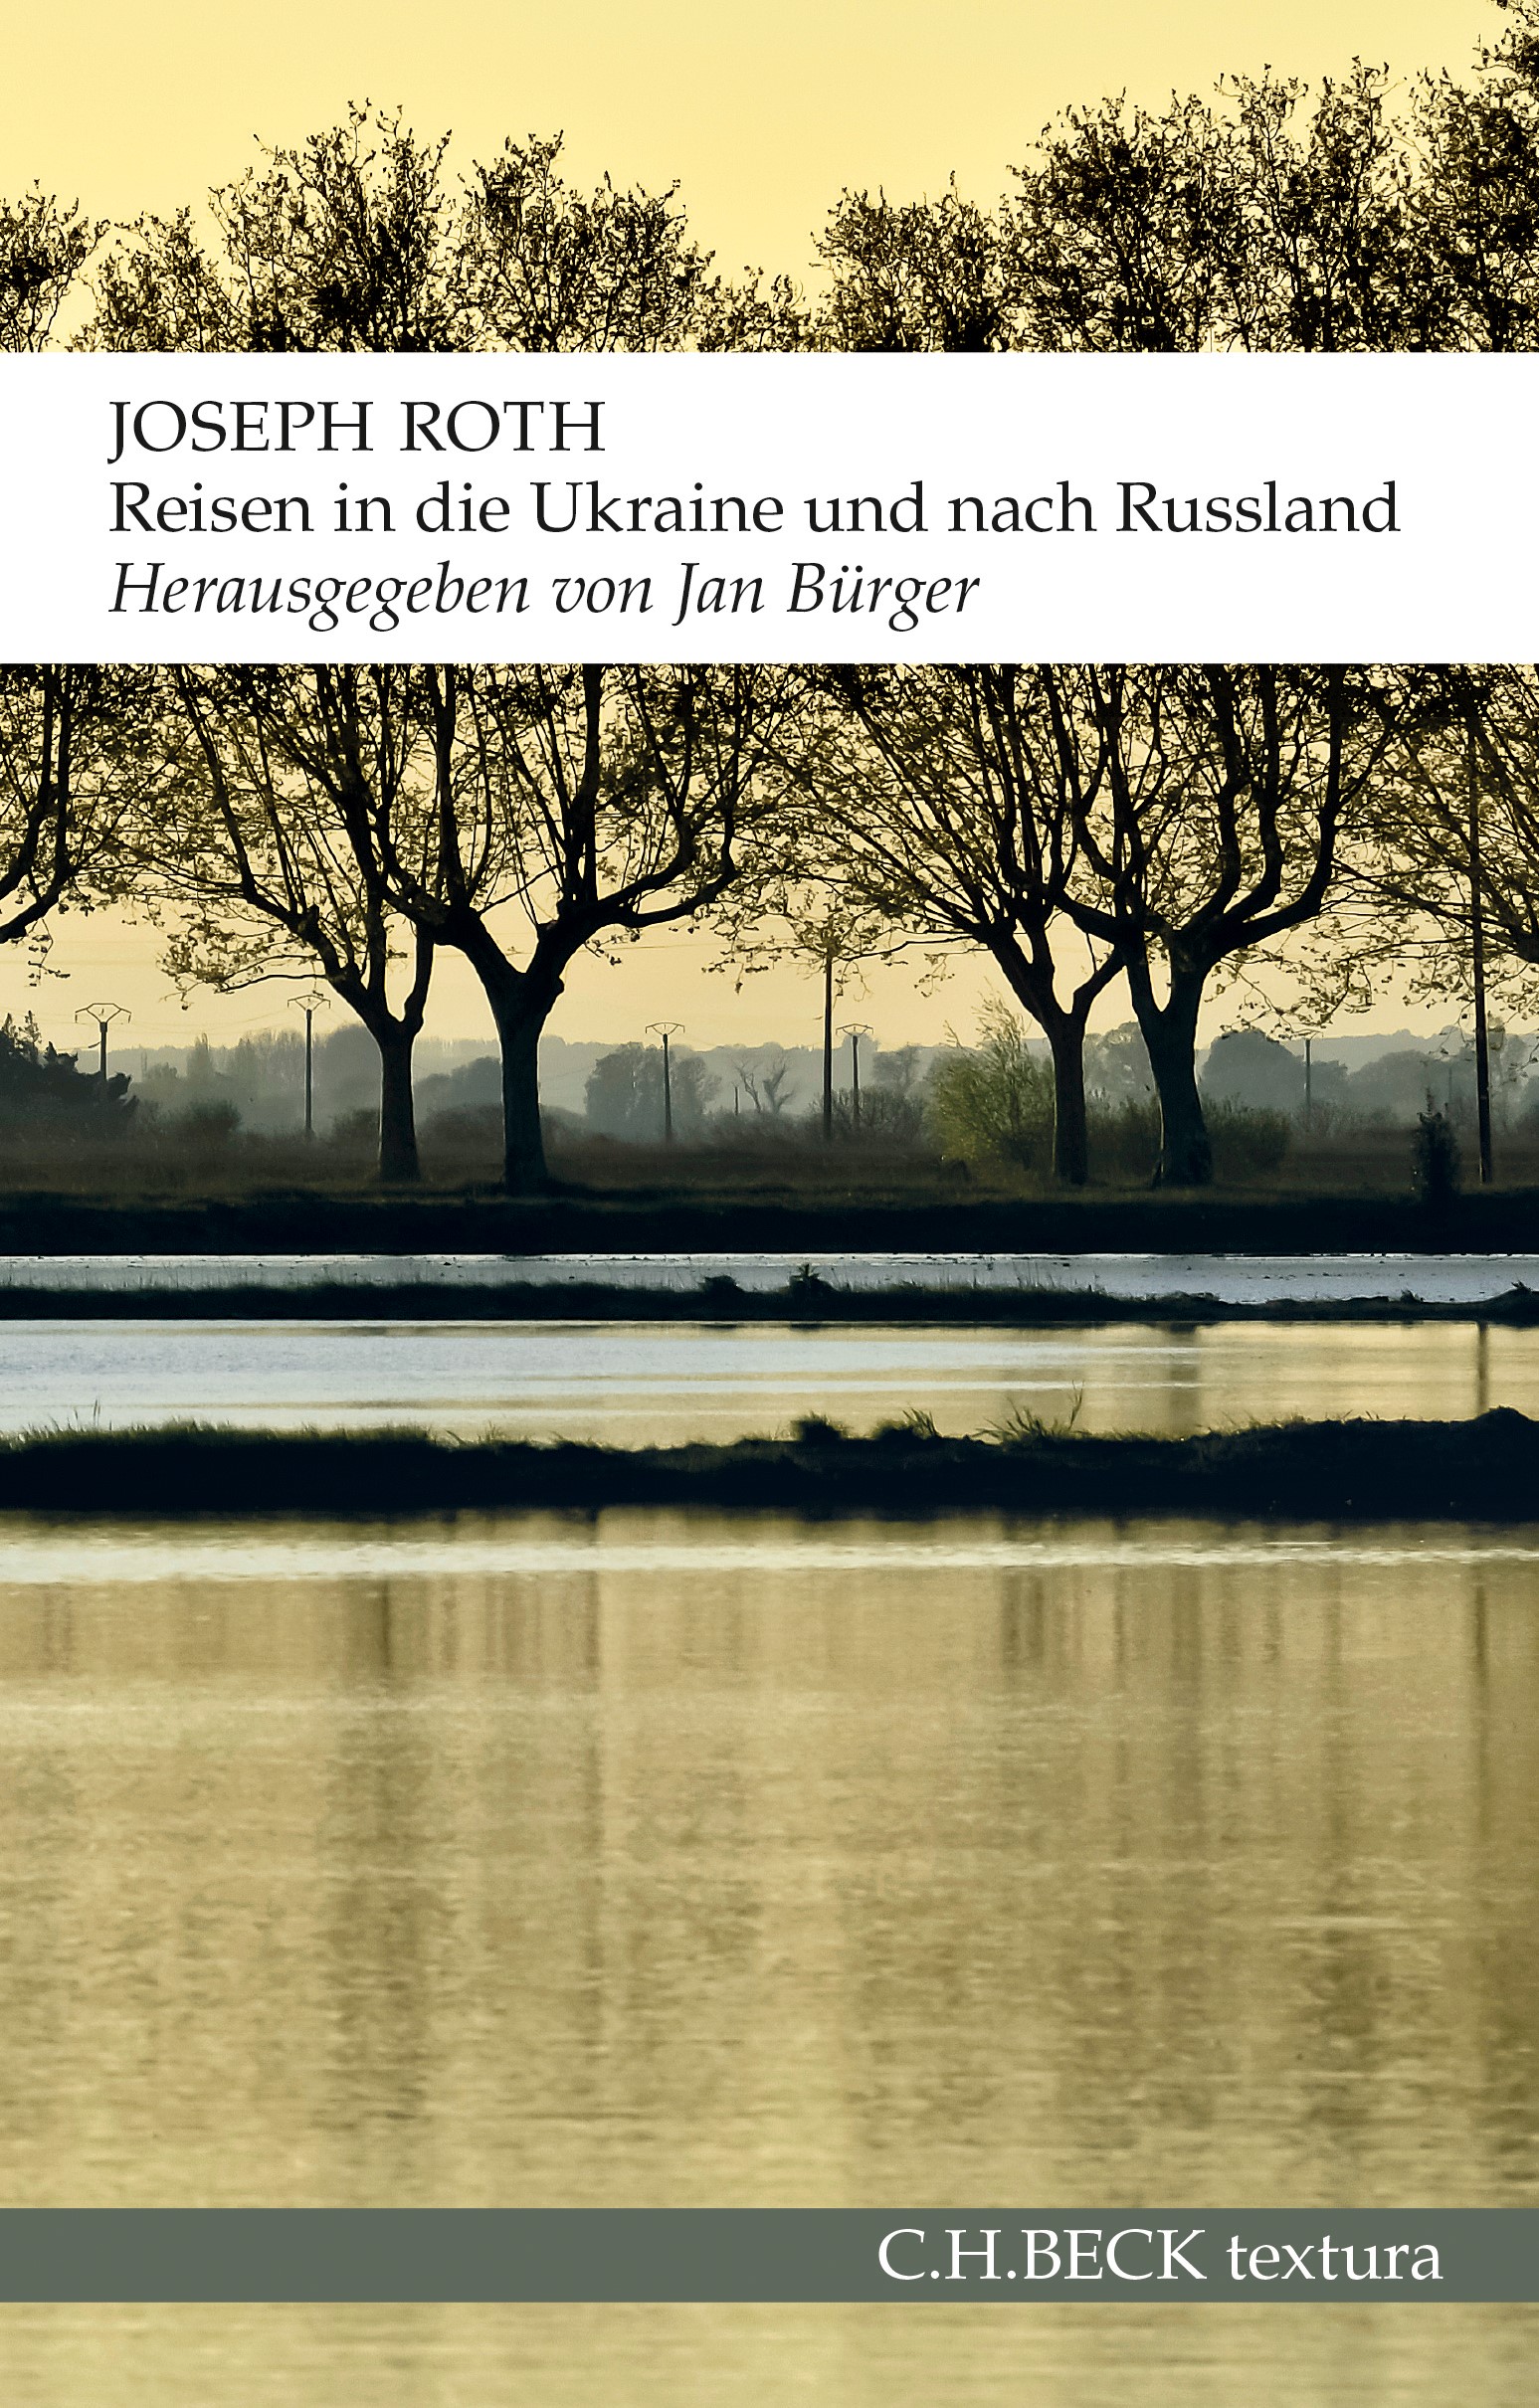 Cover: Roth, Joseph, Reisen in die Ukraine und nach Russland